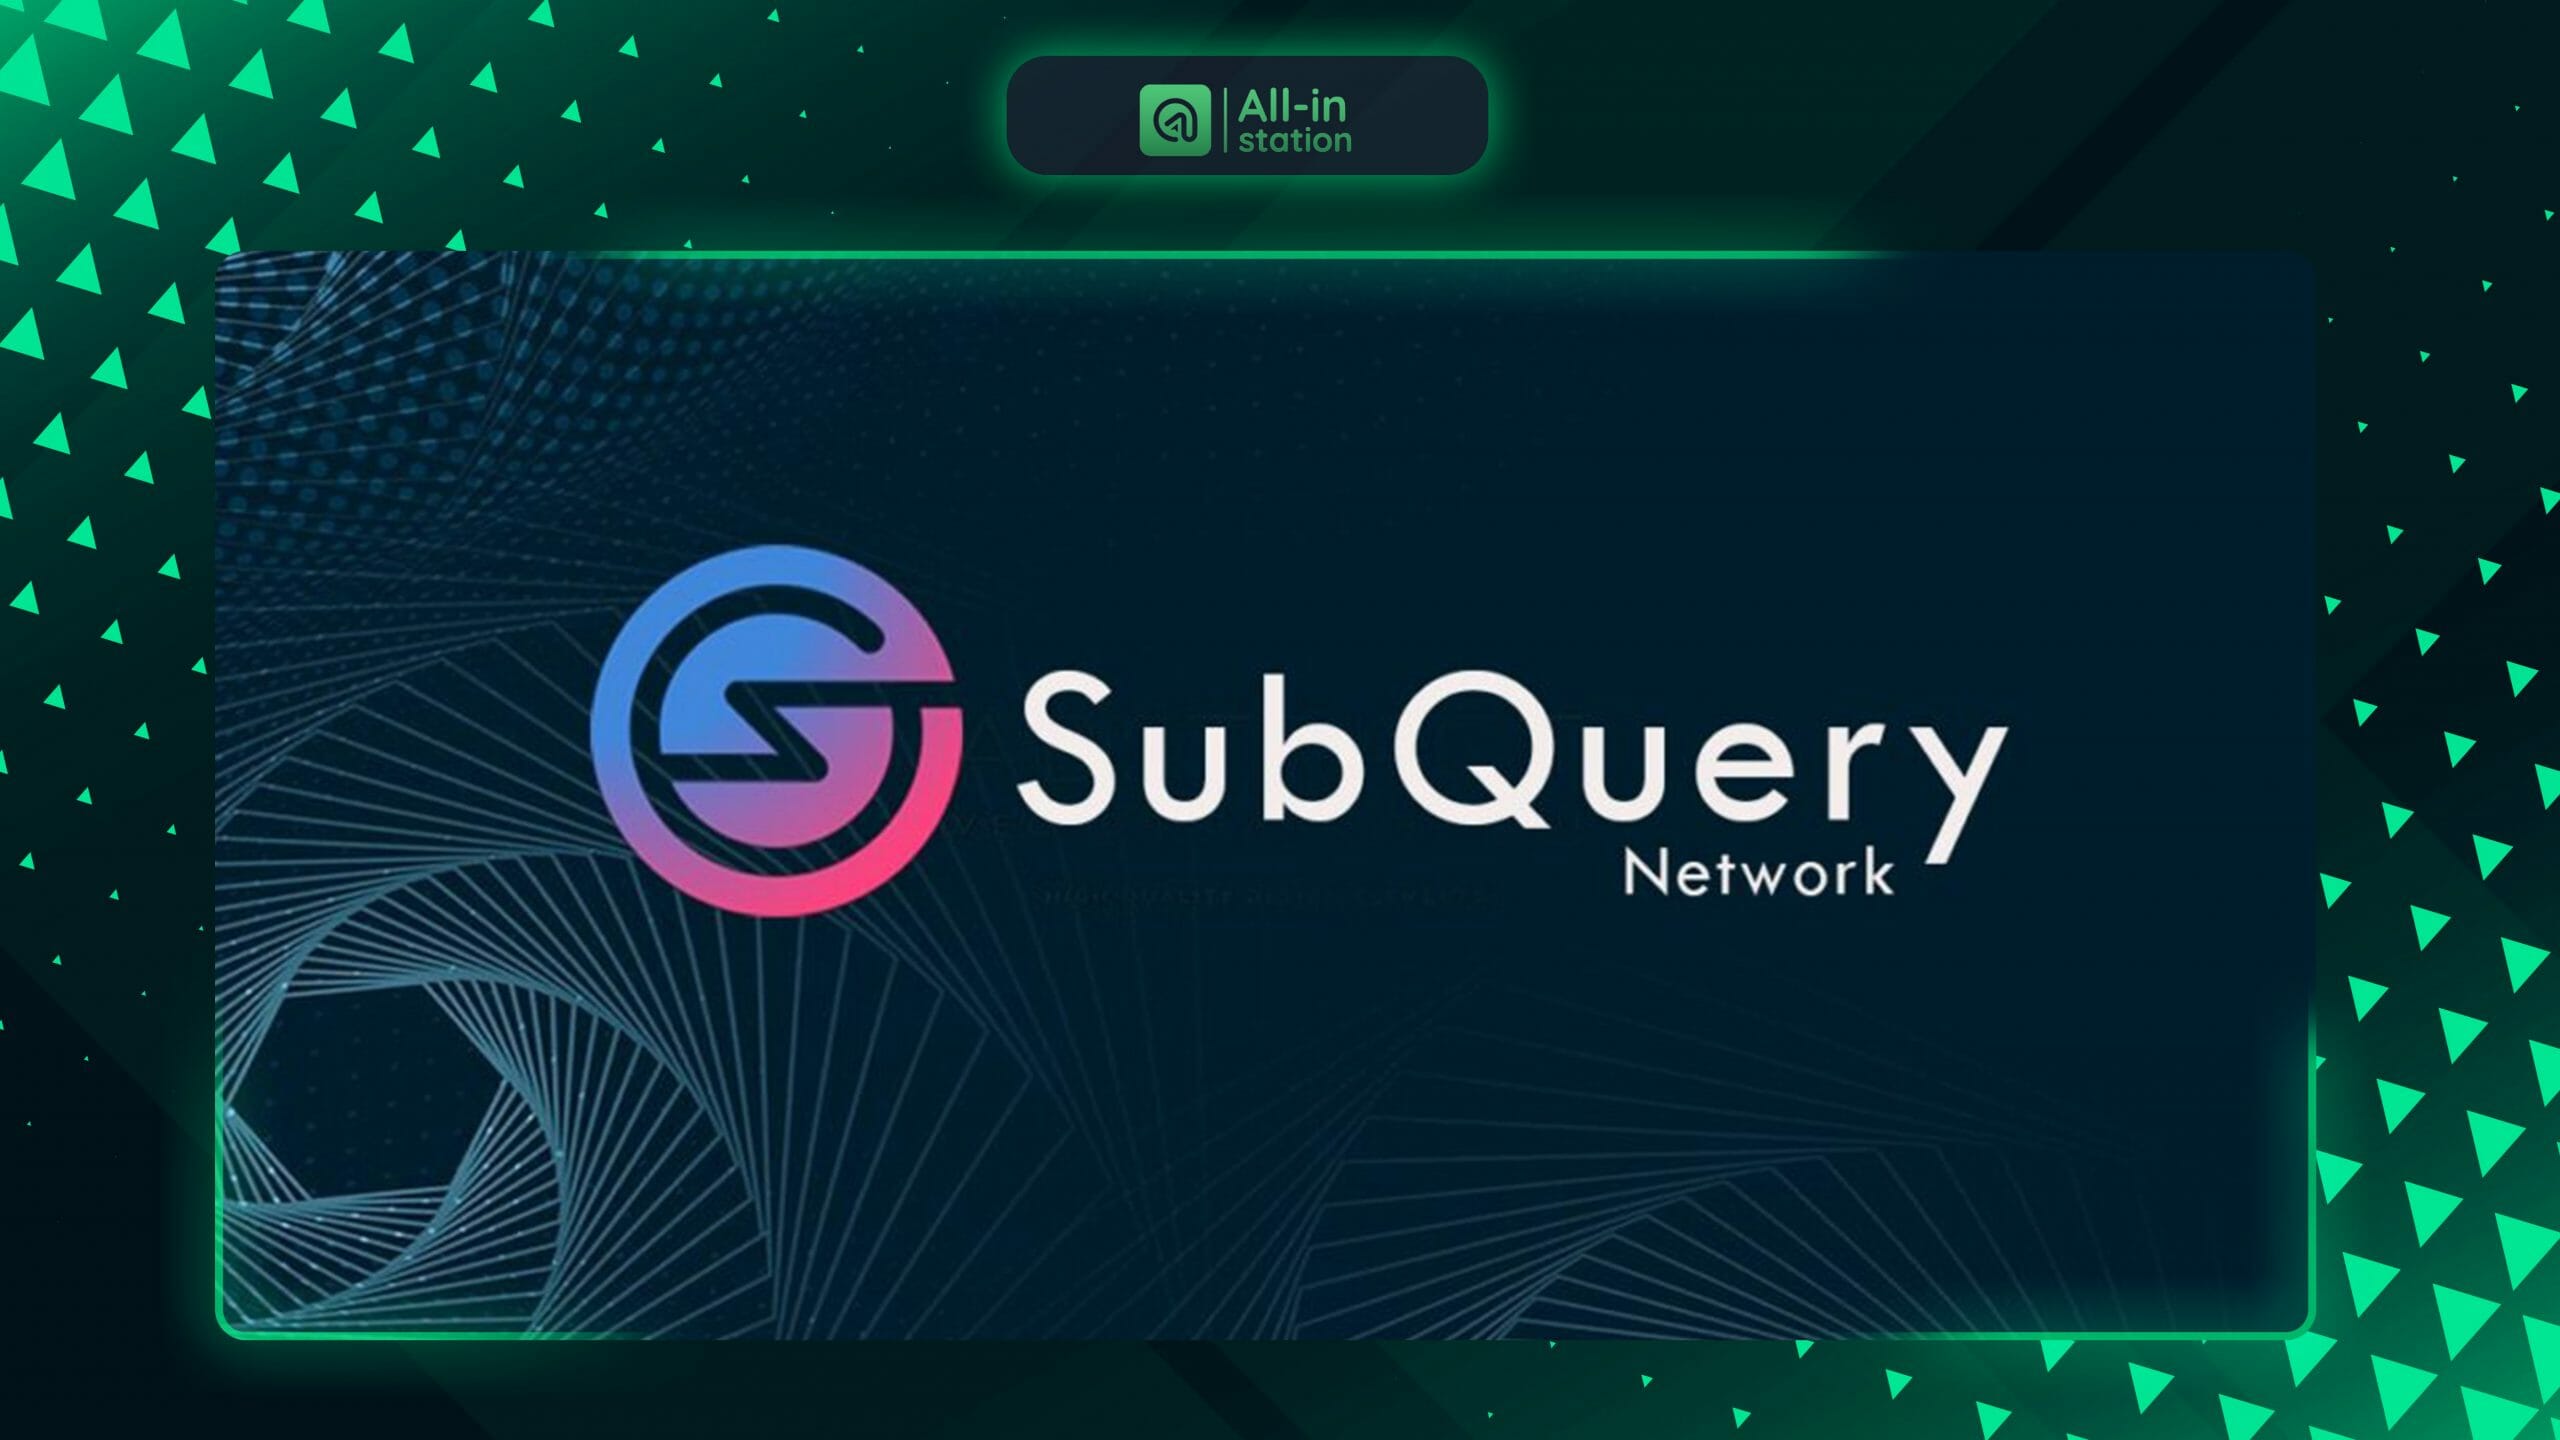 SubQuery Network là gì? Toàn bộ thông tin về dự án SubQuery - Allinstation  - Kiến thức, tin tức crypto